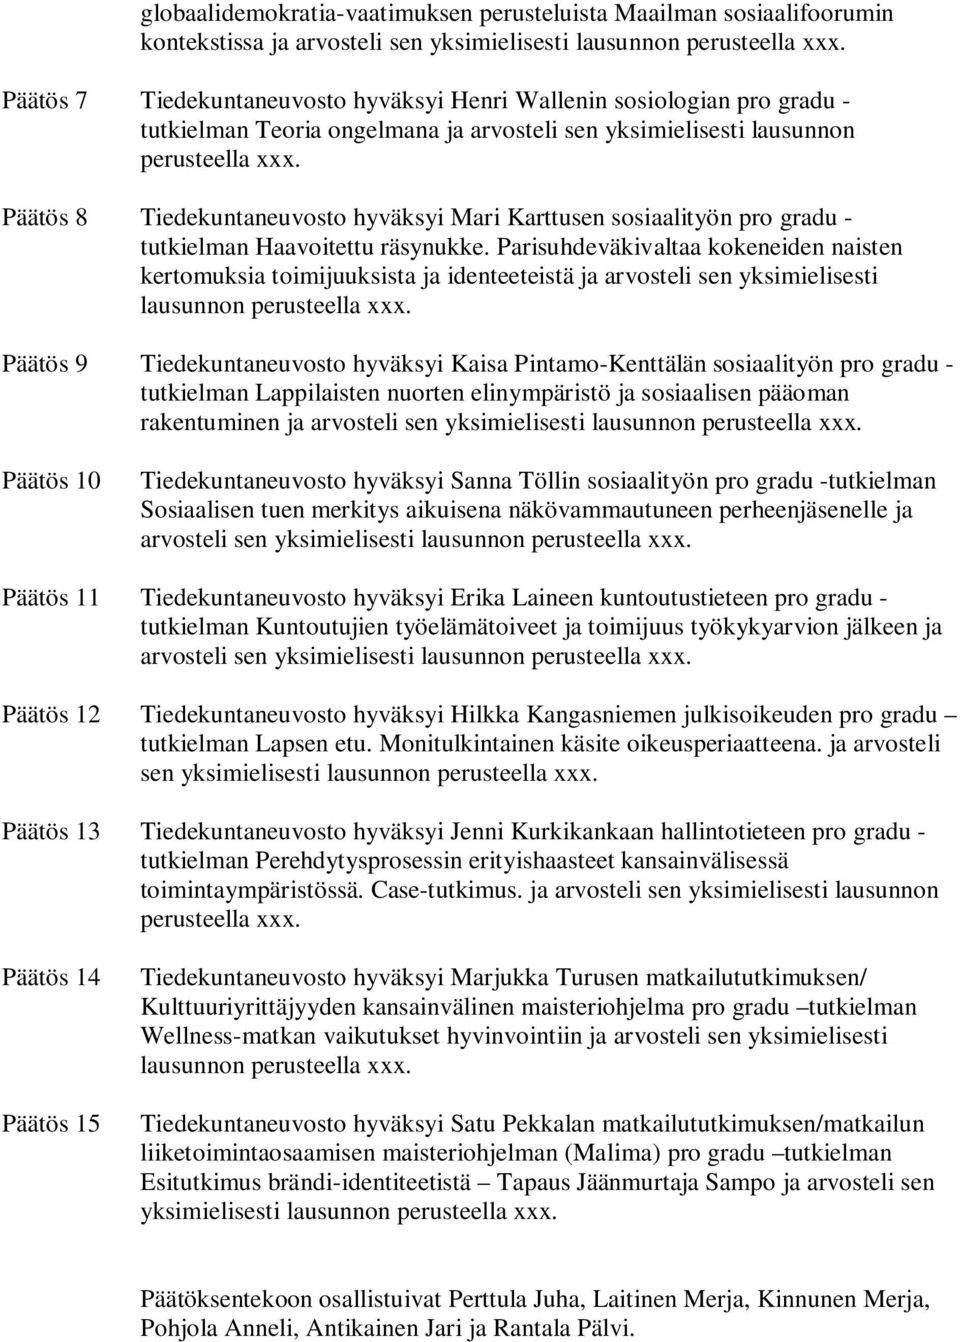 Päätös 8 Tiedekuntaneuvosto hyväksyi Mari Karttusen sosiaalityön pro gradu - tutkielman Haavoitettu räsynukke.